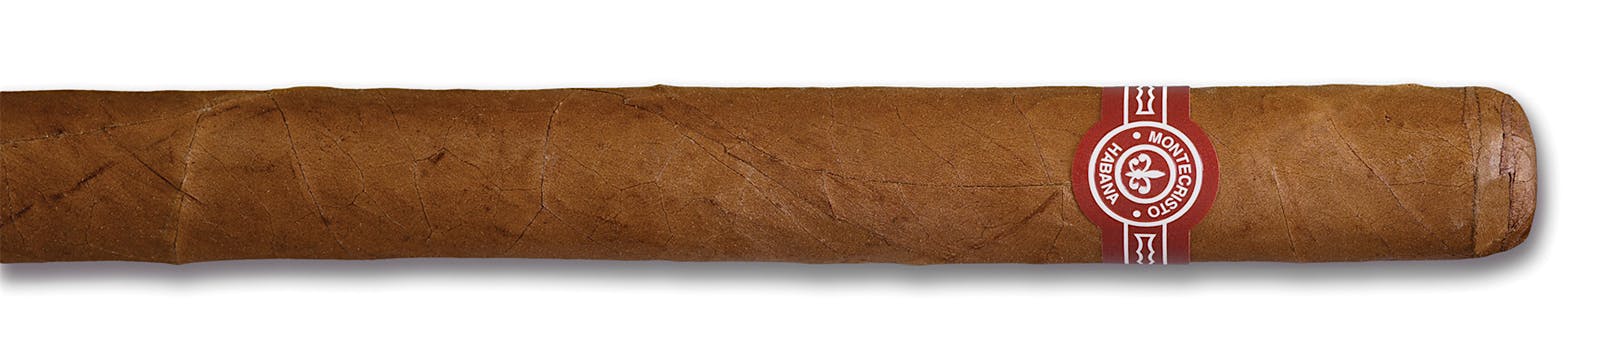 Montecristo A cigar